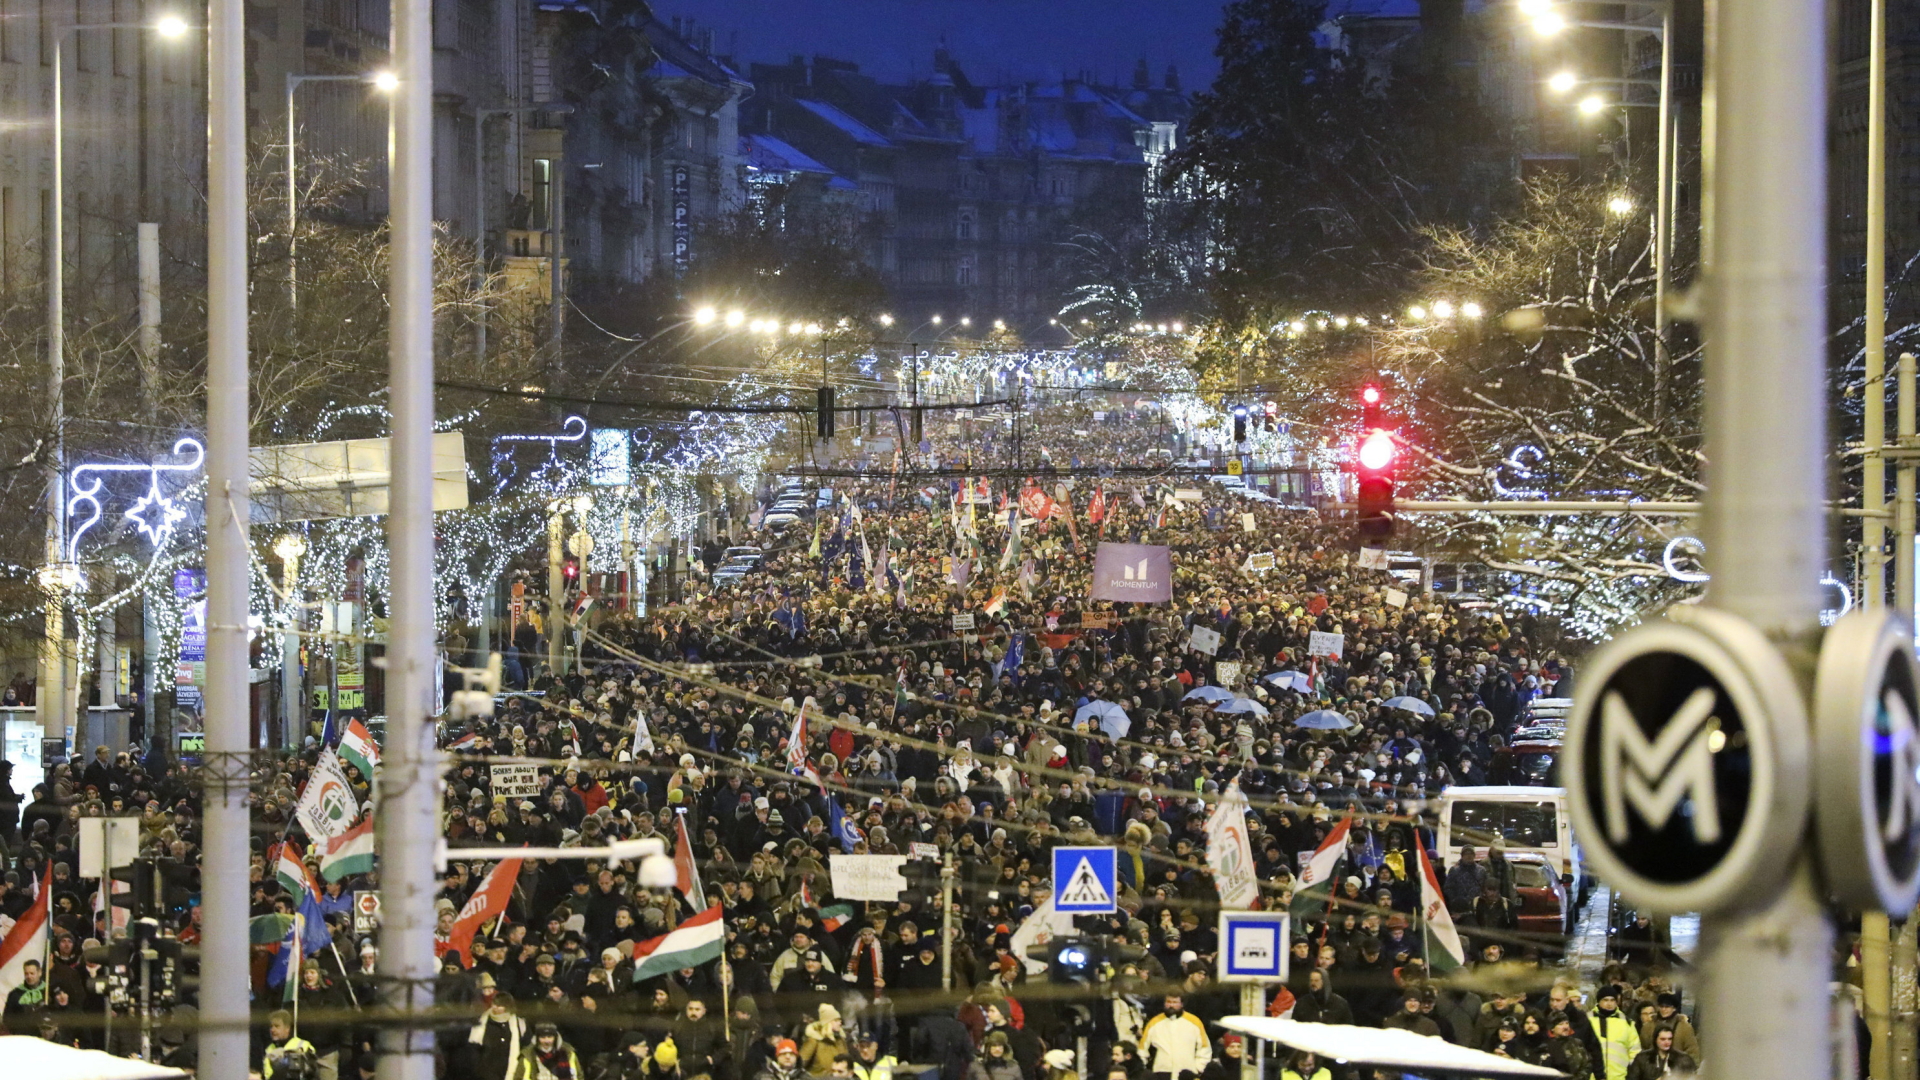 Teilnehmer einer Demonstration gegen die Regierung marschieren unter der Weihnachtsdeko im Stadtzentrum. | Bildquelle: dpa